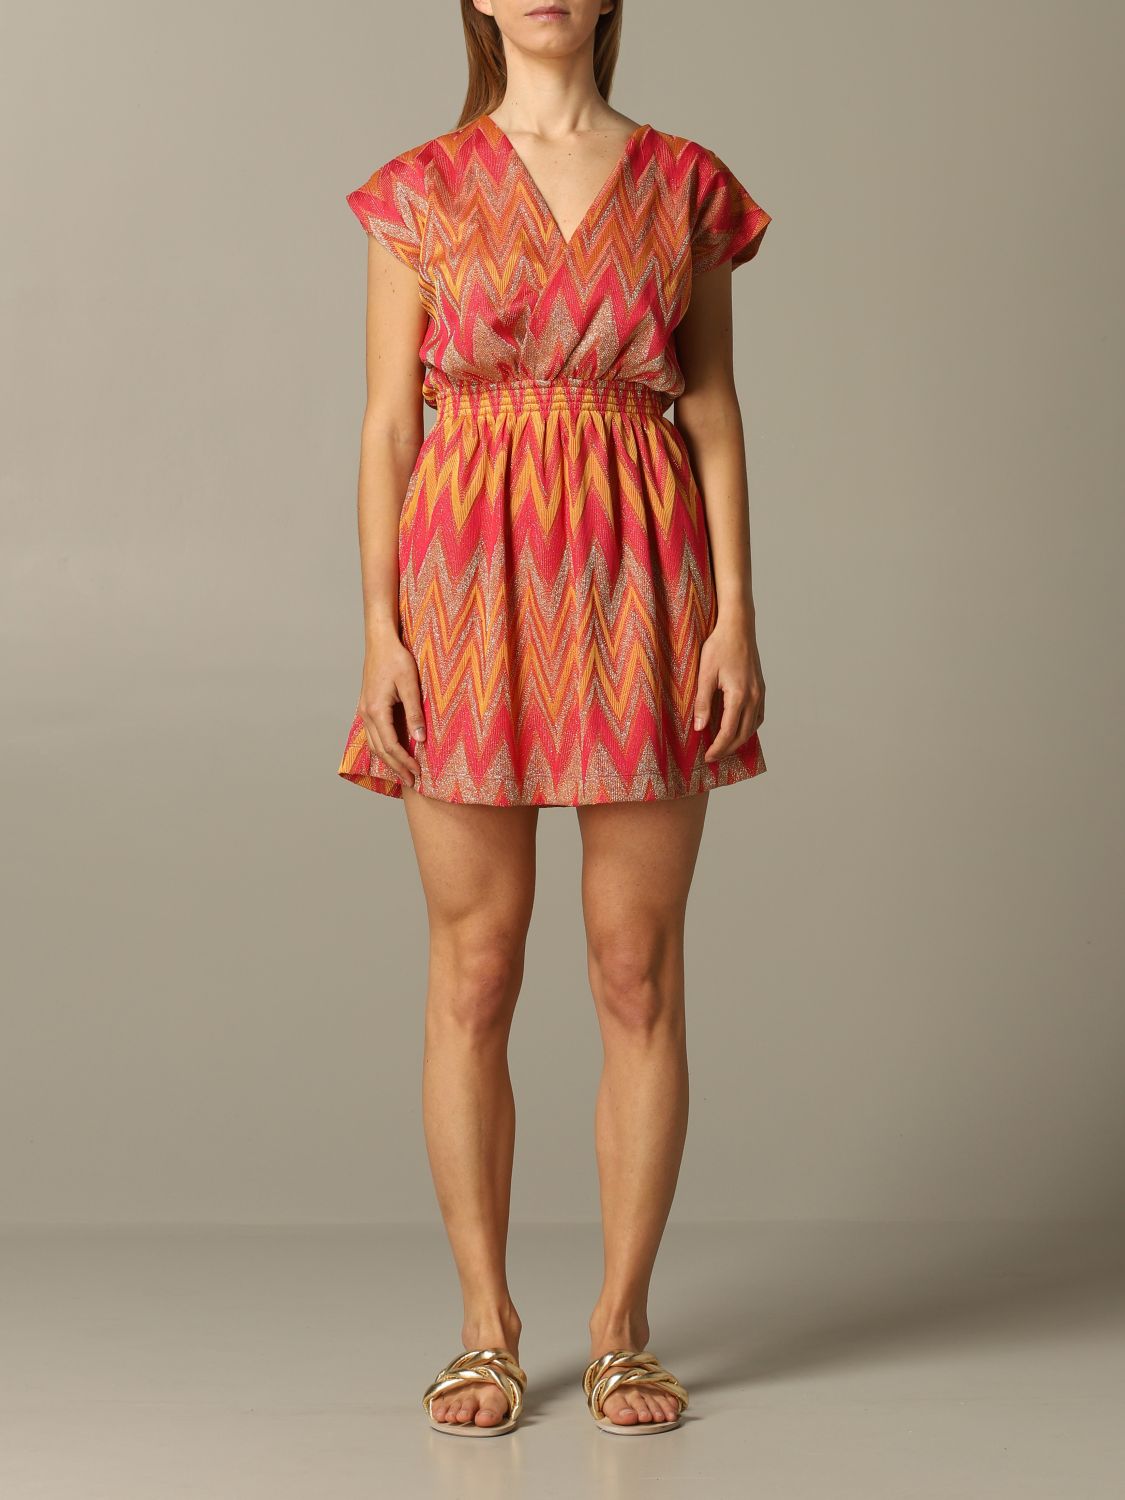 Missoni Dress Hot Sale, 59% OFF | www ...